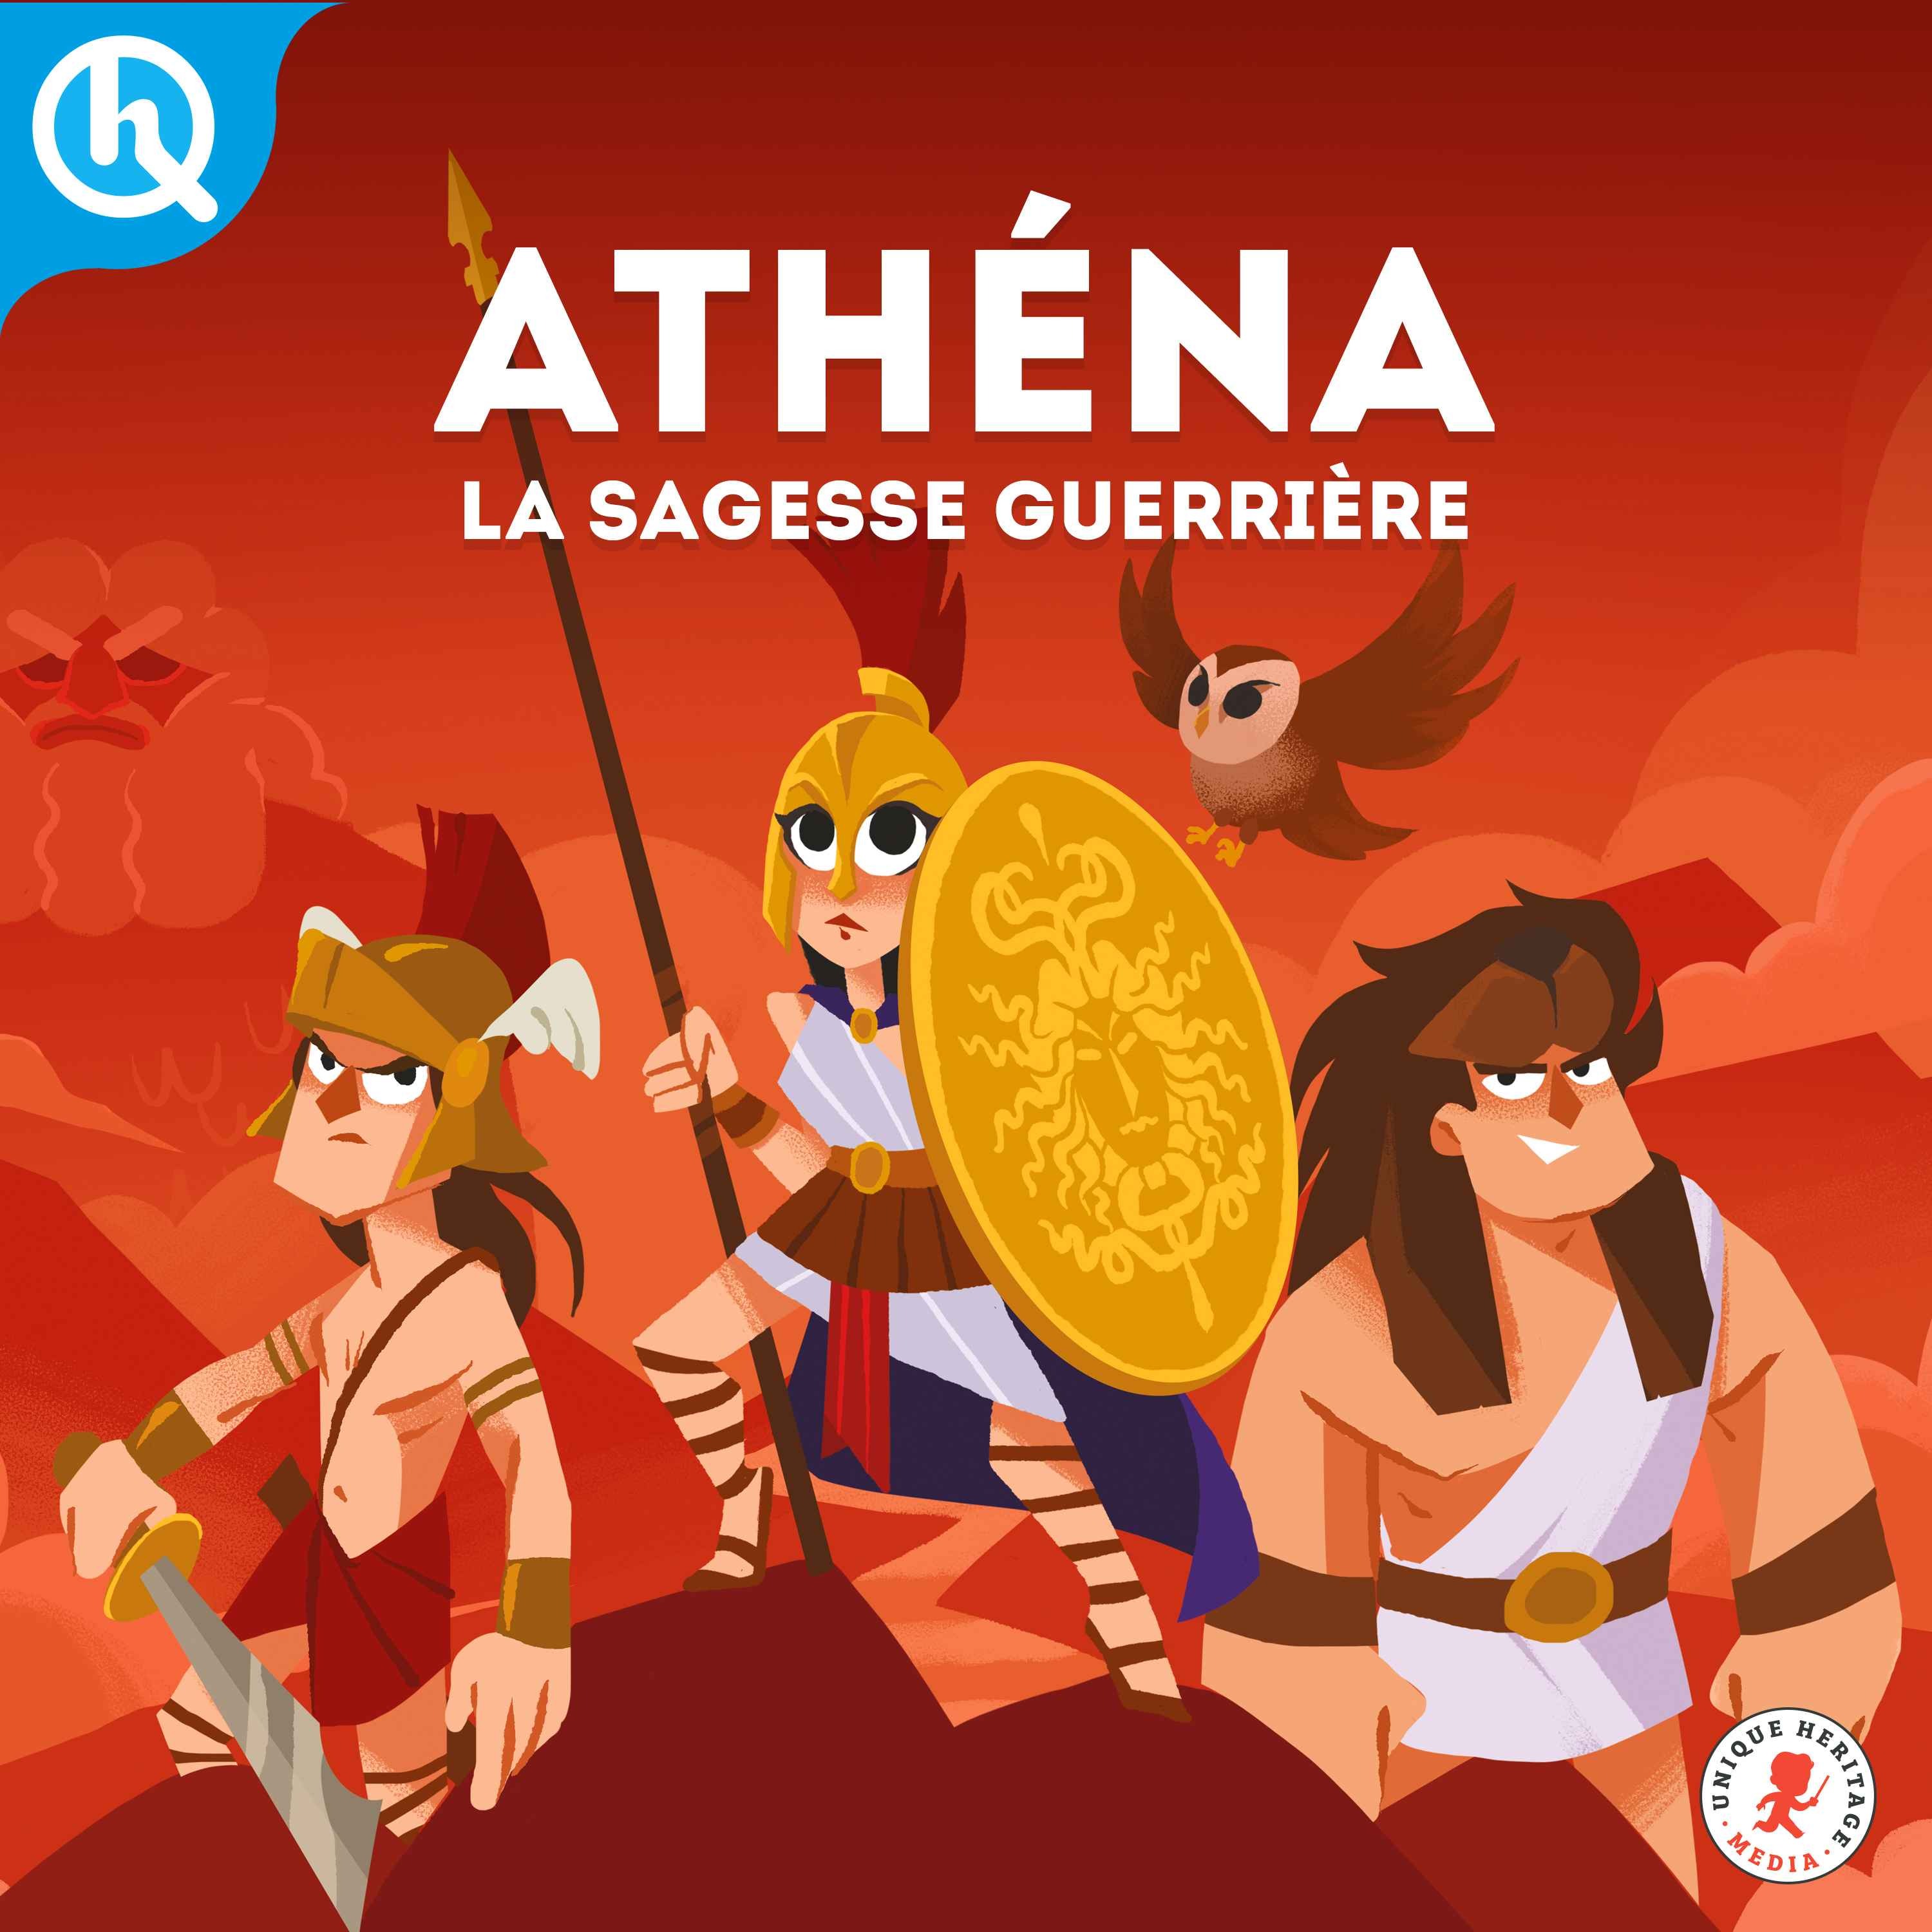 Athena, la sagesse guerrière